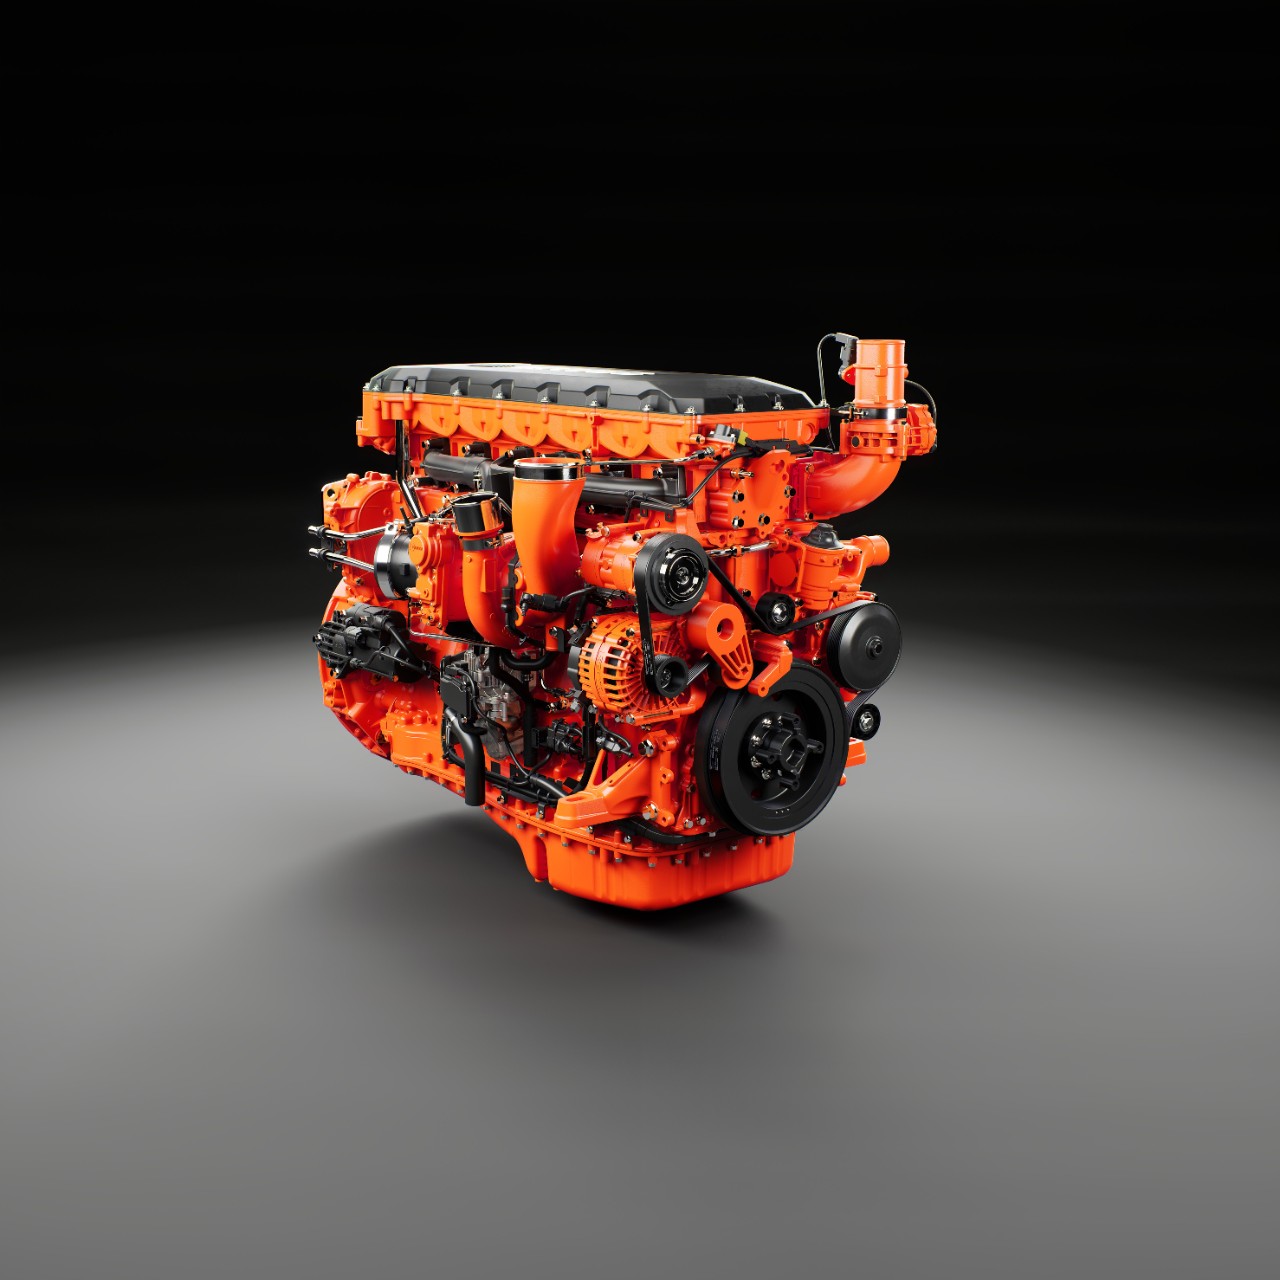 Next generation inline engine range